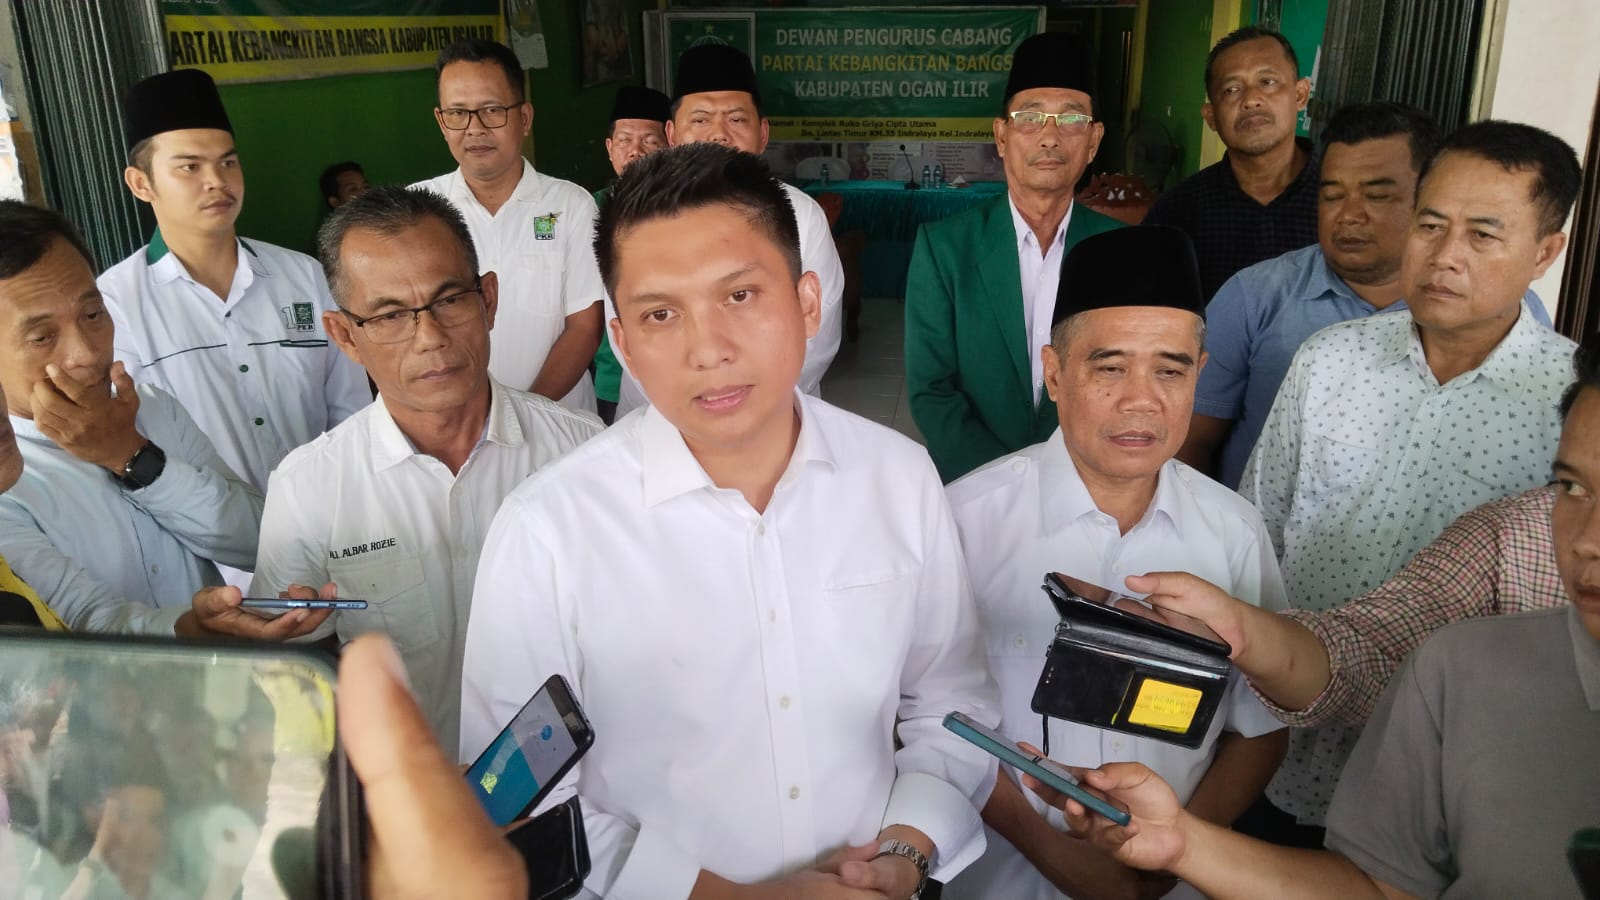 Panca Wijaya Akbar Bersama Ardani, Ambil Formulir Pendaftaran di 7 Parpol untuk Pilkada Kabupaten Ogan Ilir